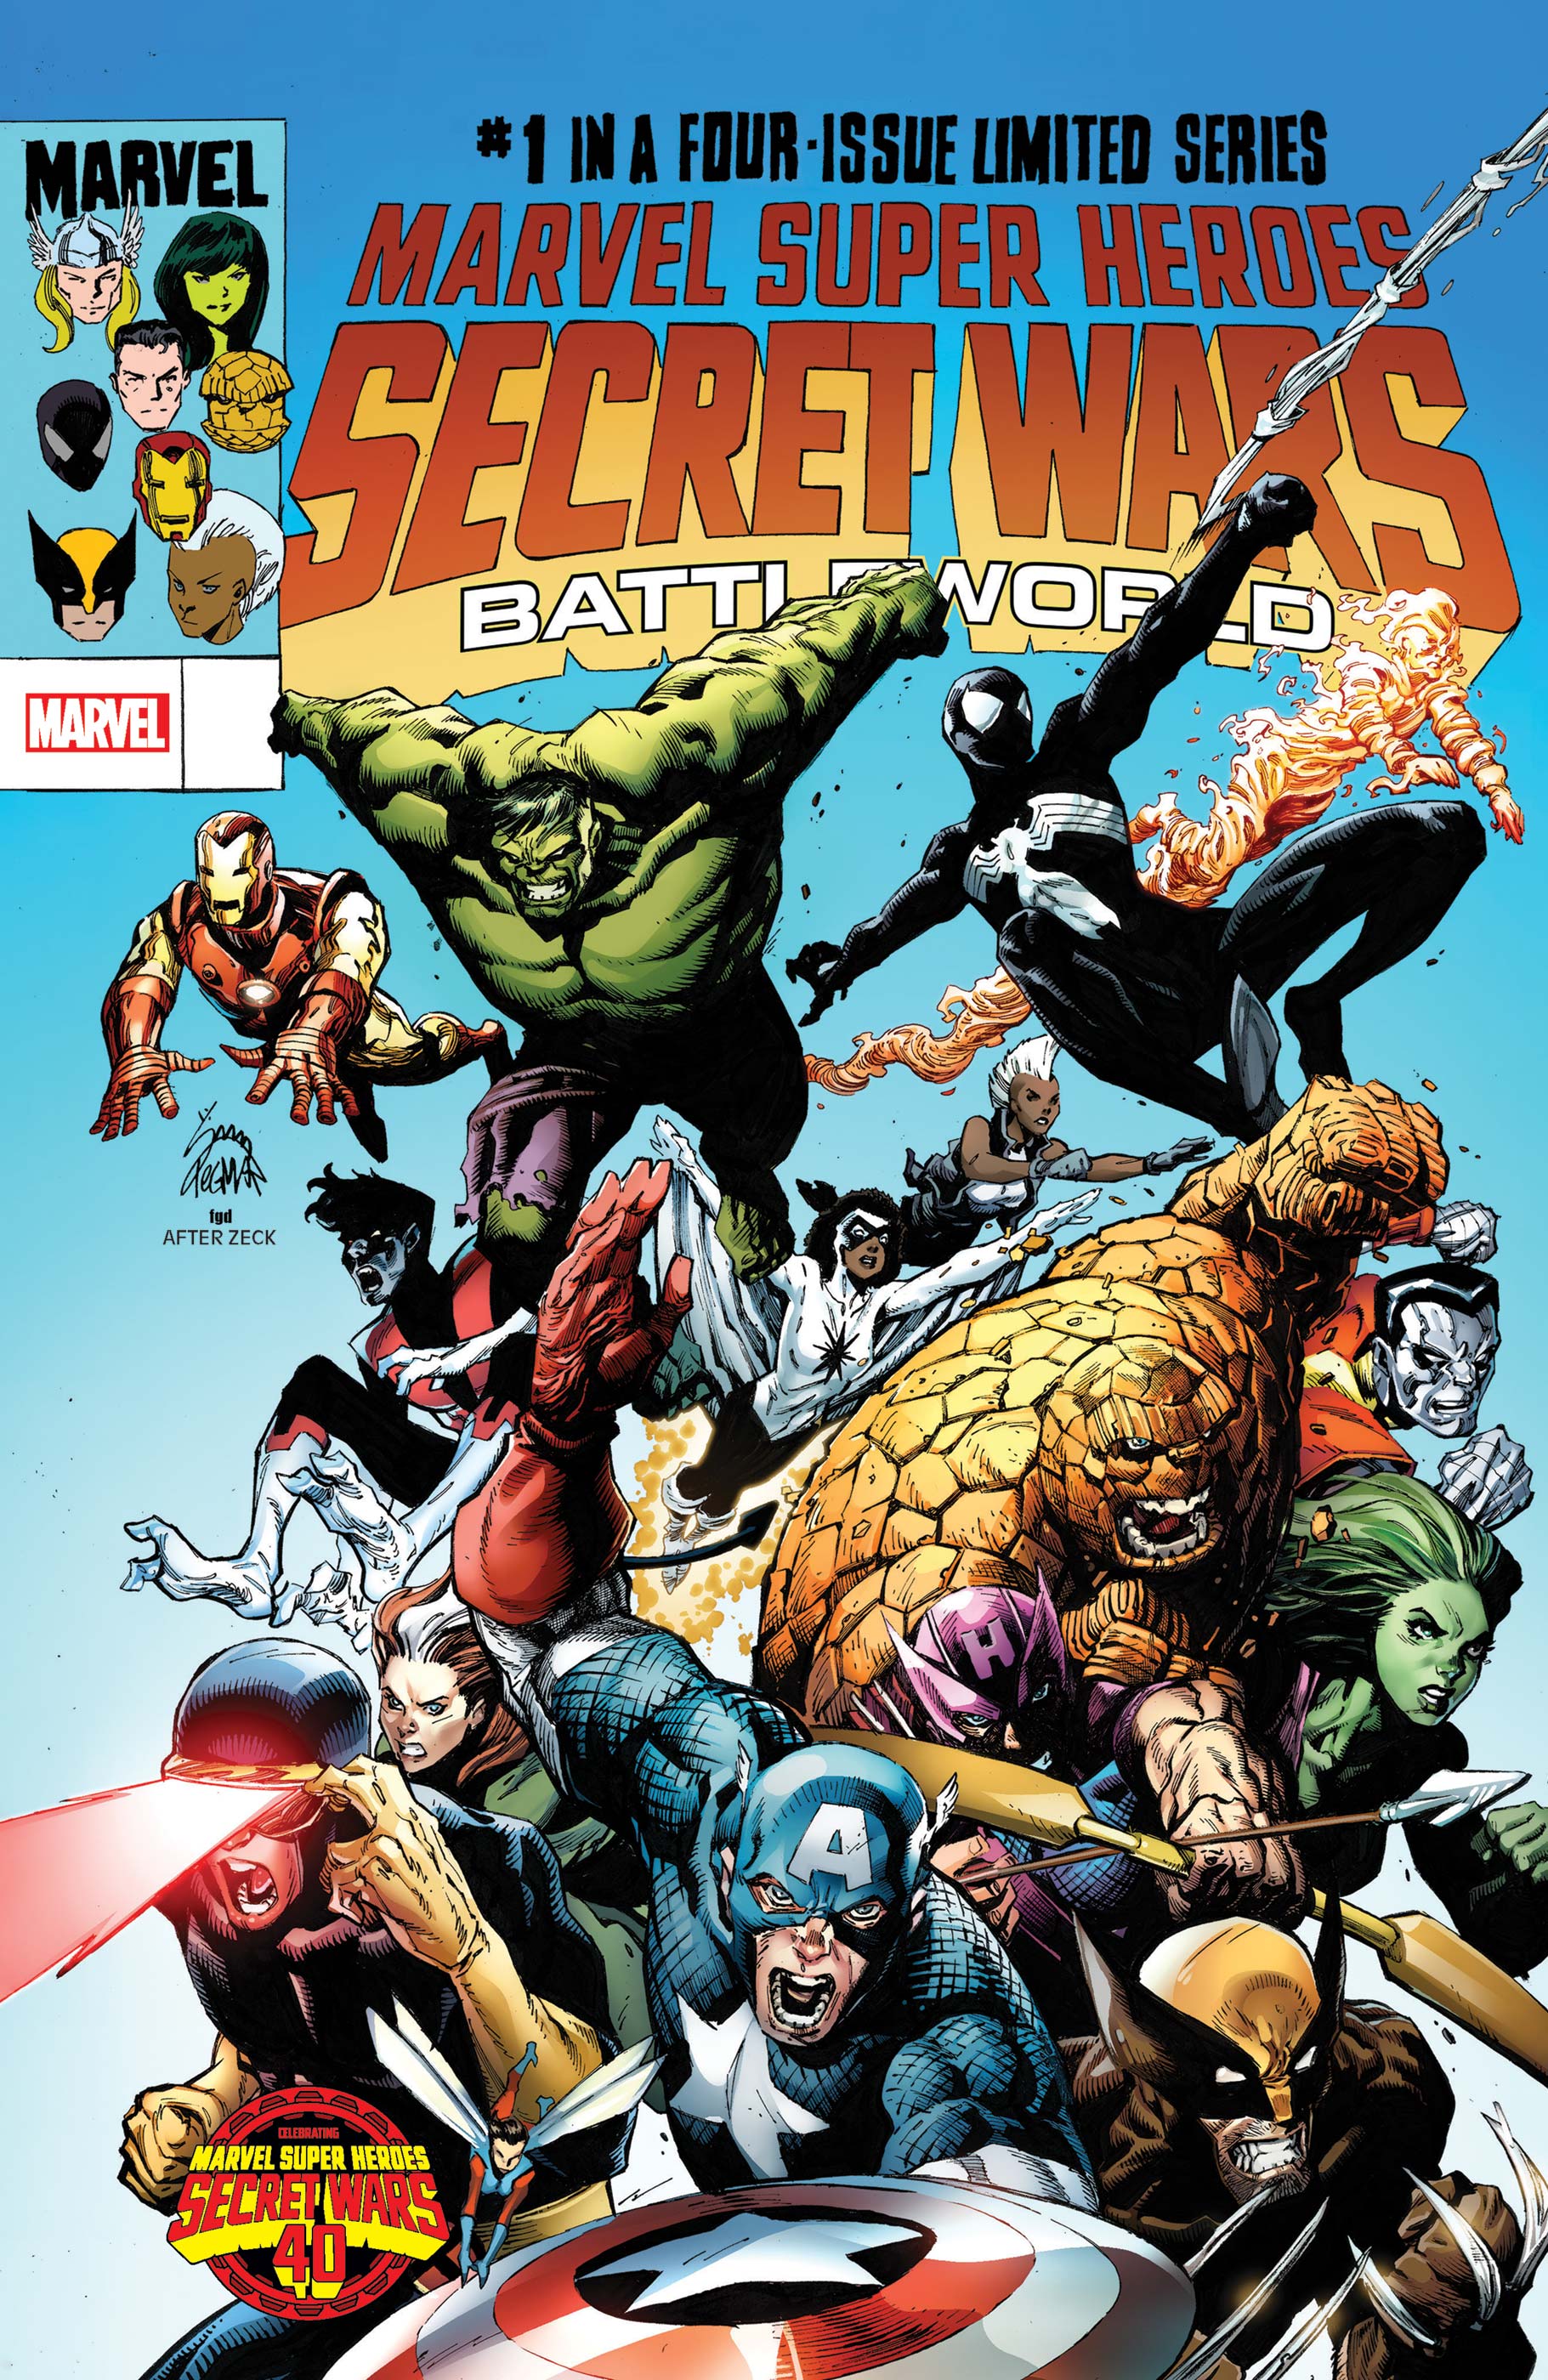 Marvel Super Heroes Secret Wars: Battleworld (2023) #1 (Variant)